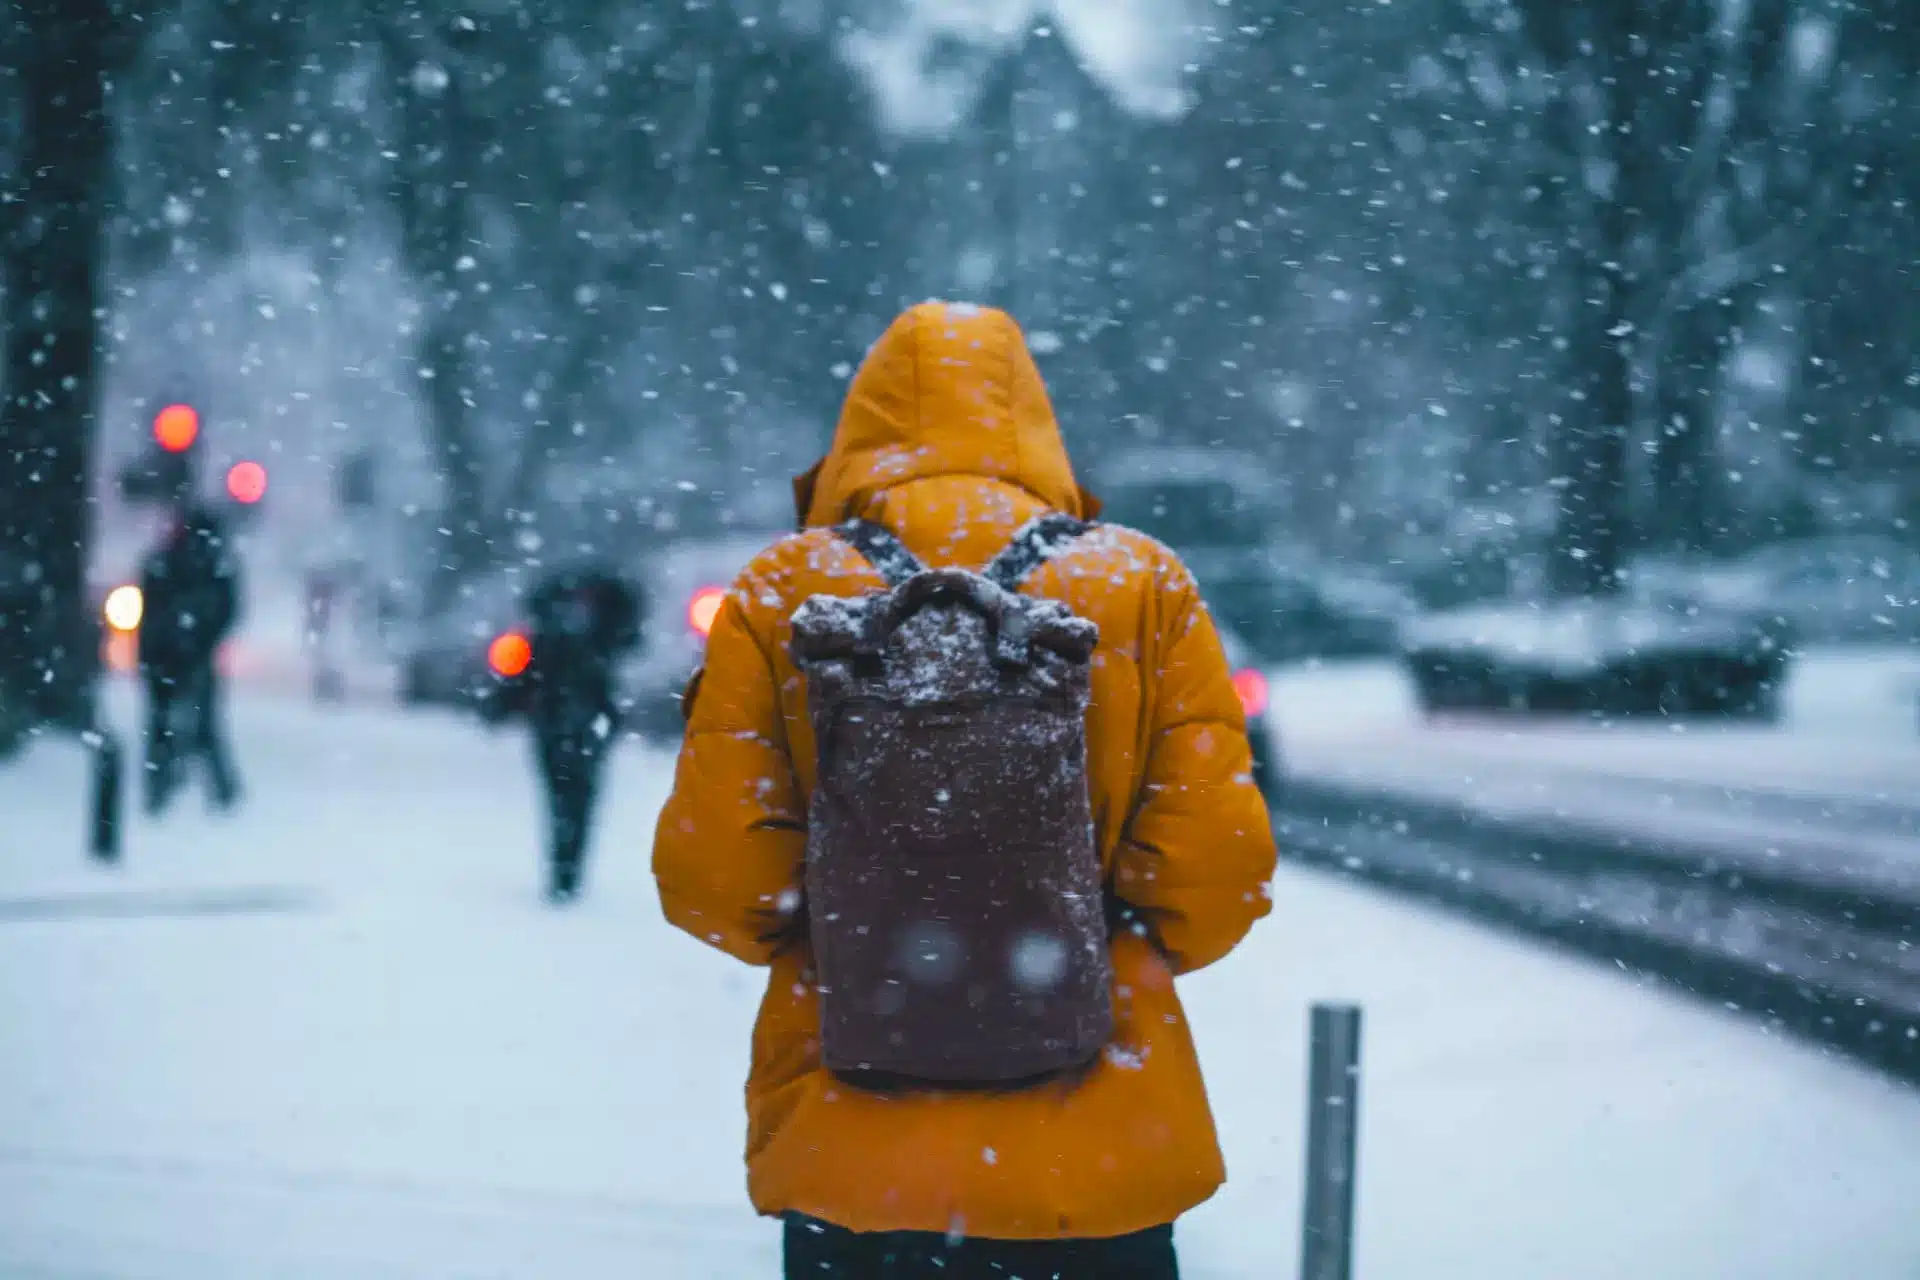 Uma pessoa de costas de jaqueta amarela e mochila enquanto está nevando